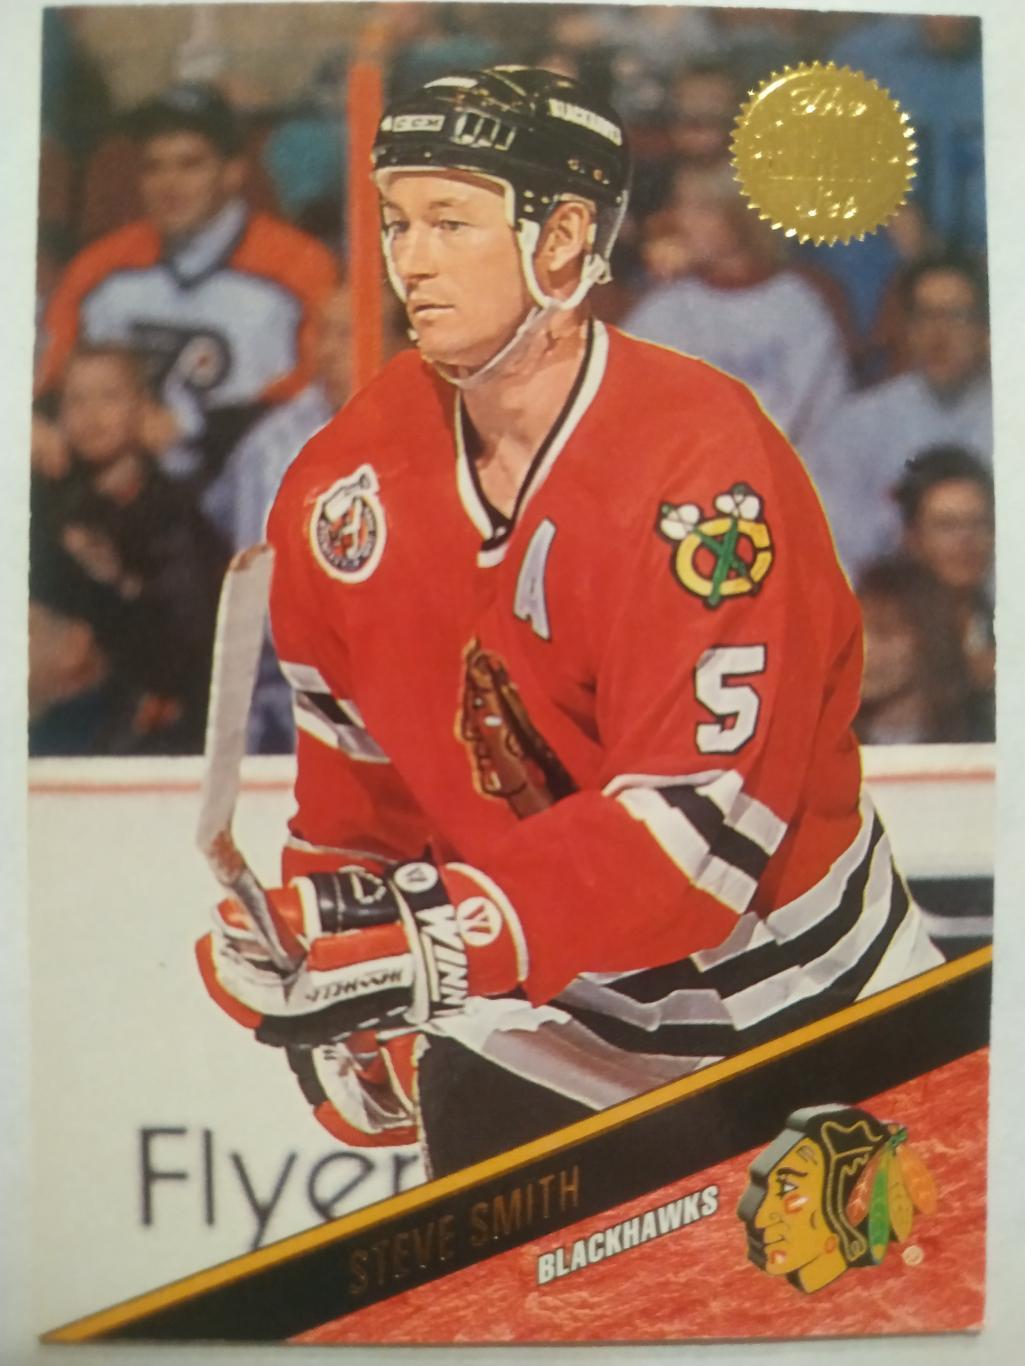 ХОККЕЙ КАРТОЧКА НХЛ LEAF SET SERIES ONE 1993-94 STEVE SMITH BLACKHAWKS #95